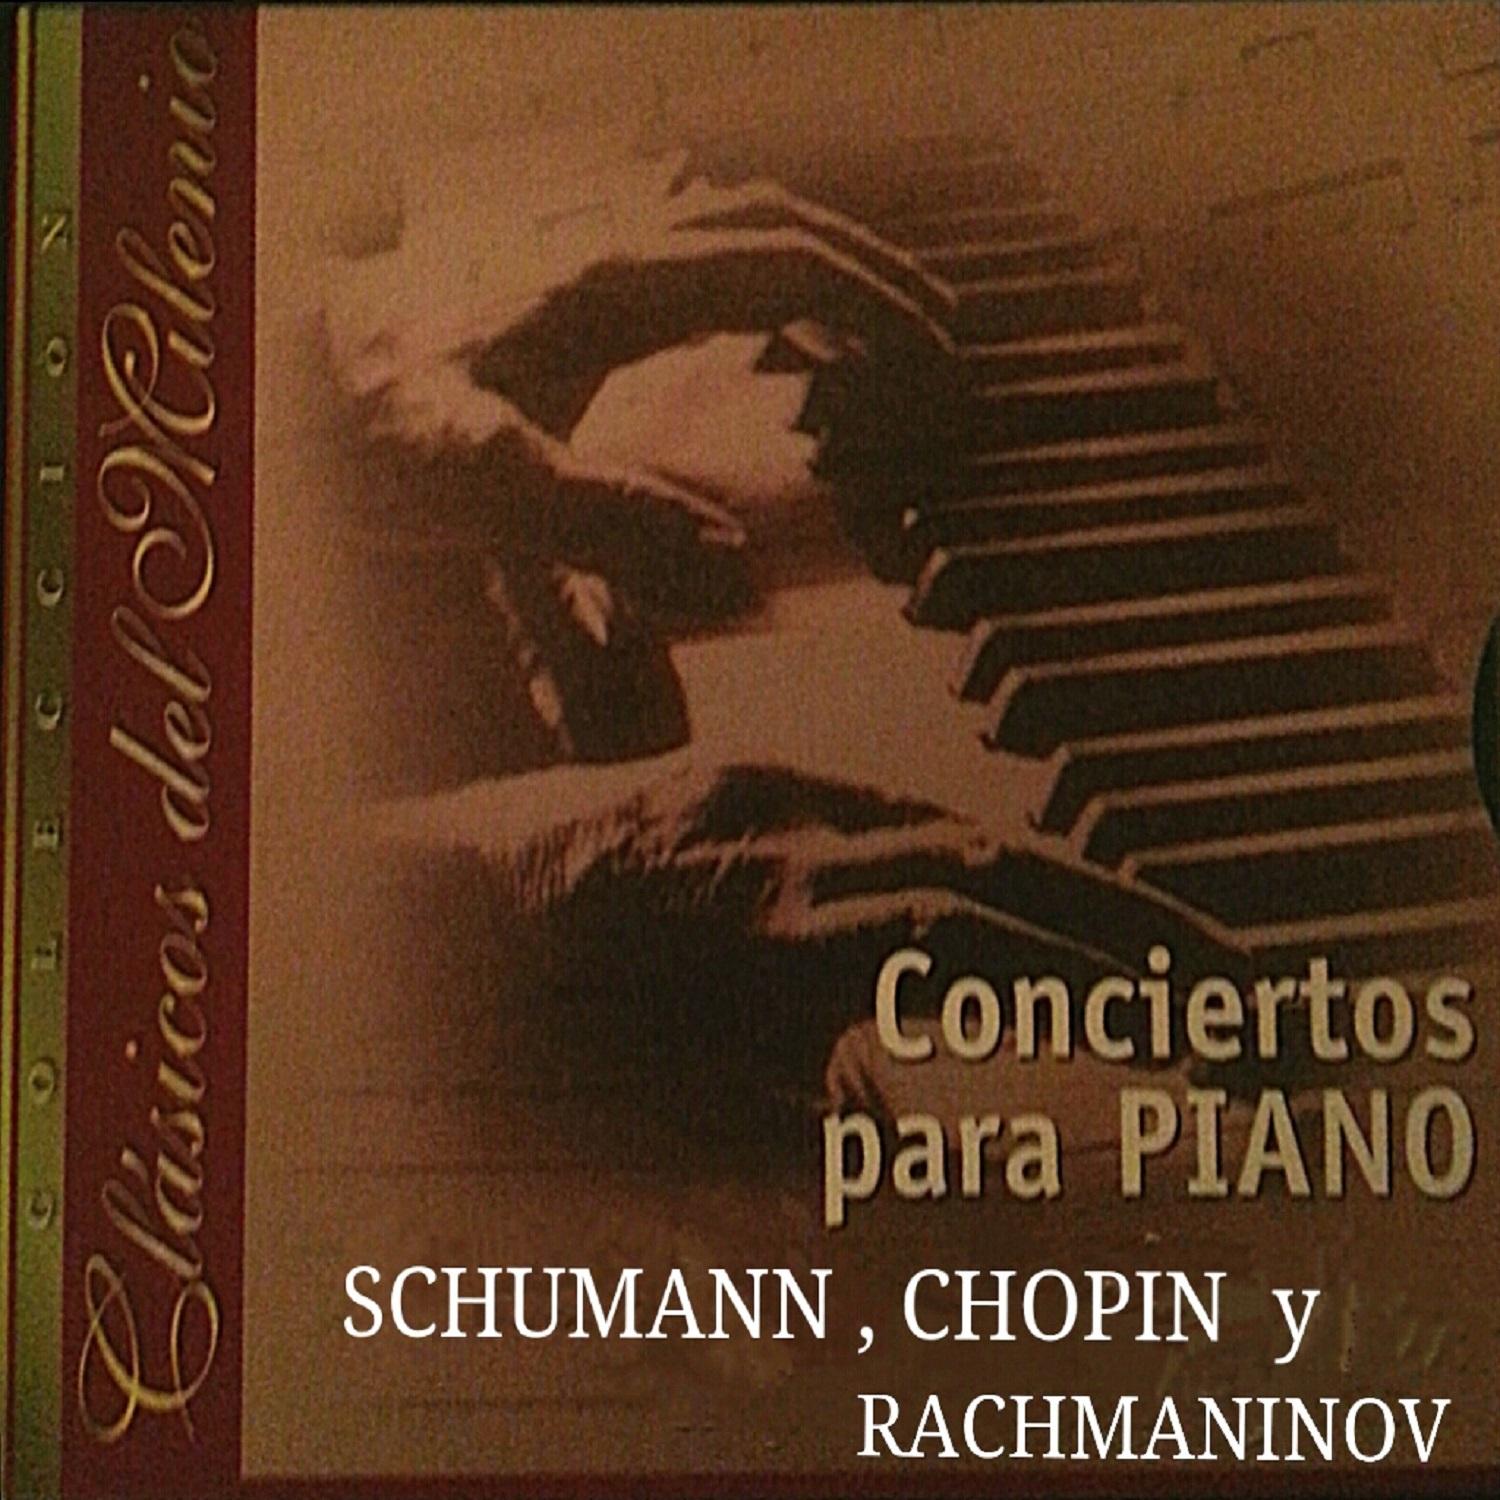 Cla sicos del Milenio, Conciertos para Piano, Schumann, Chopin, Rachmaninoff